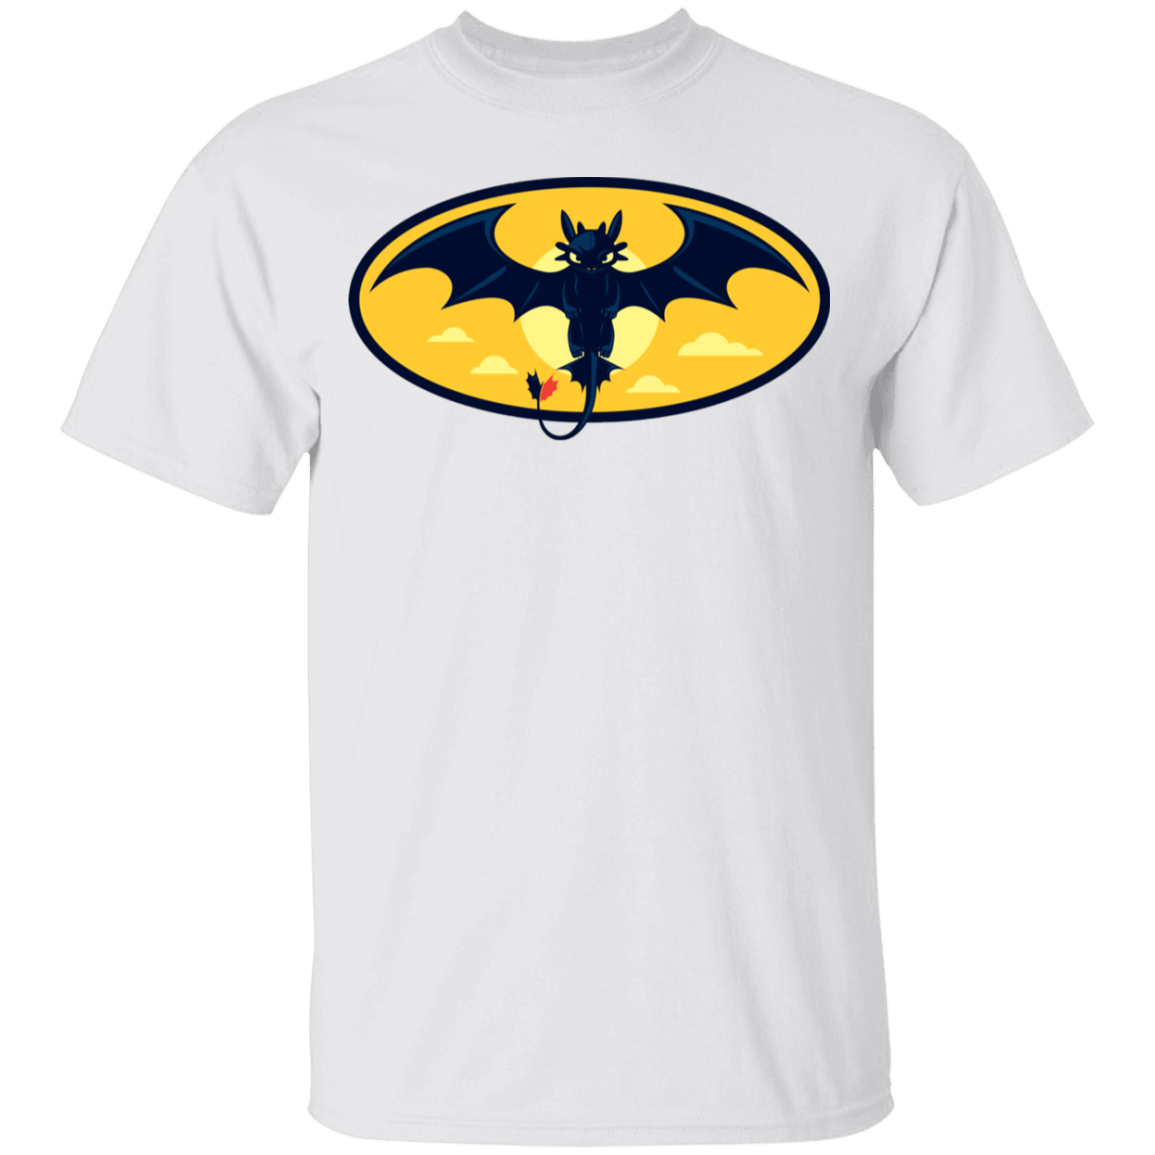 T-Shirts White / YXS Nightwing Youth T-Shirt